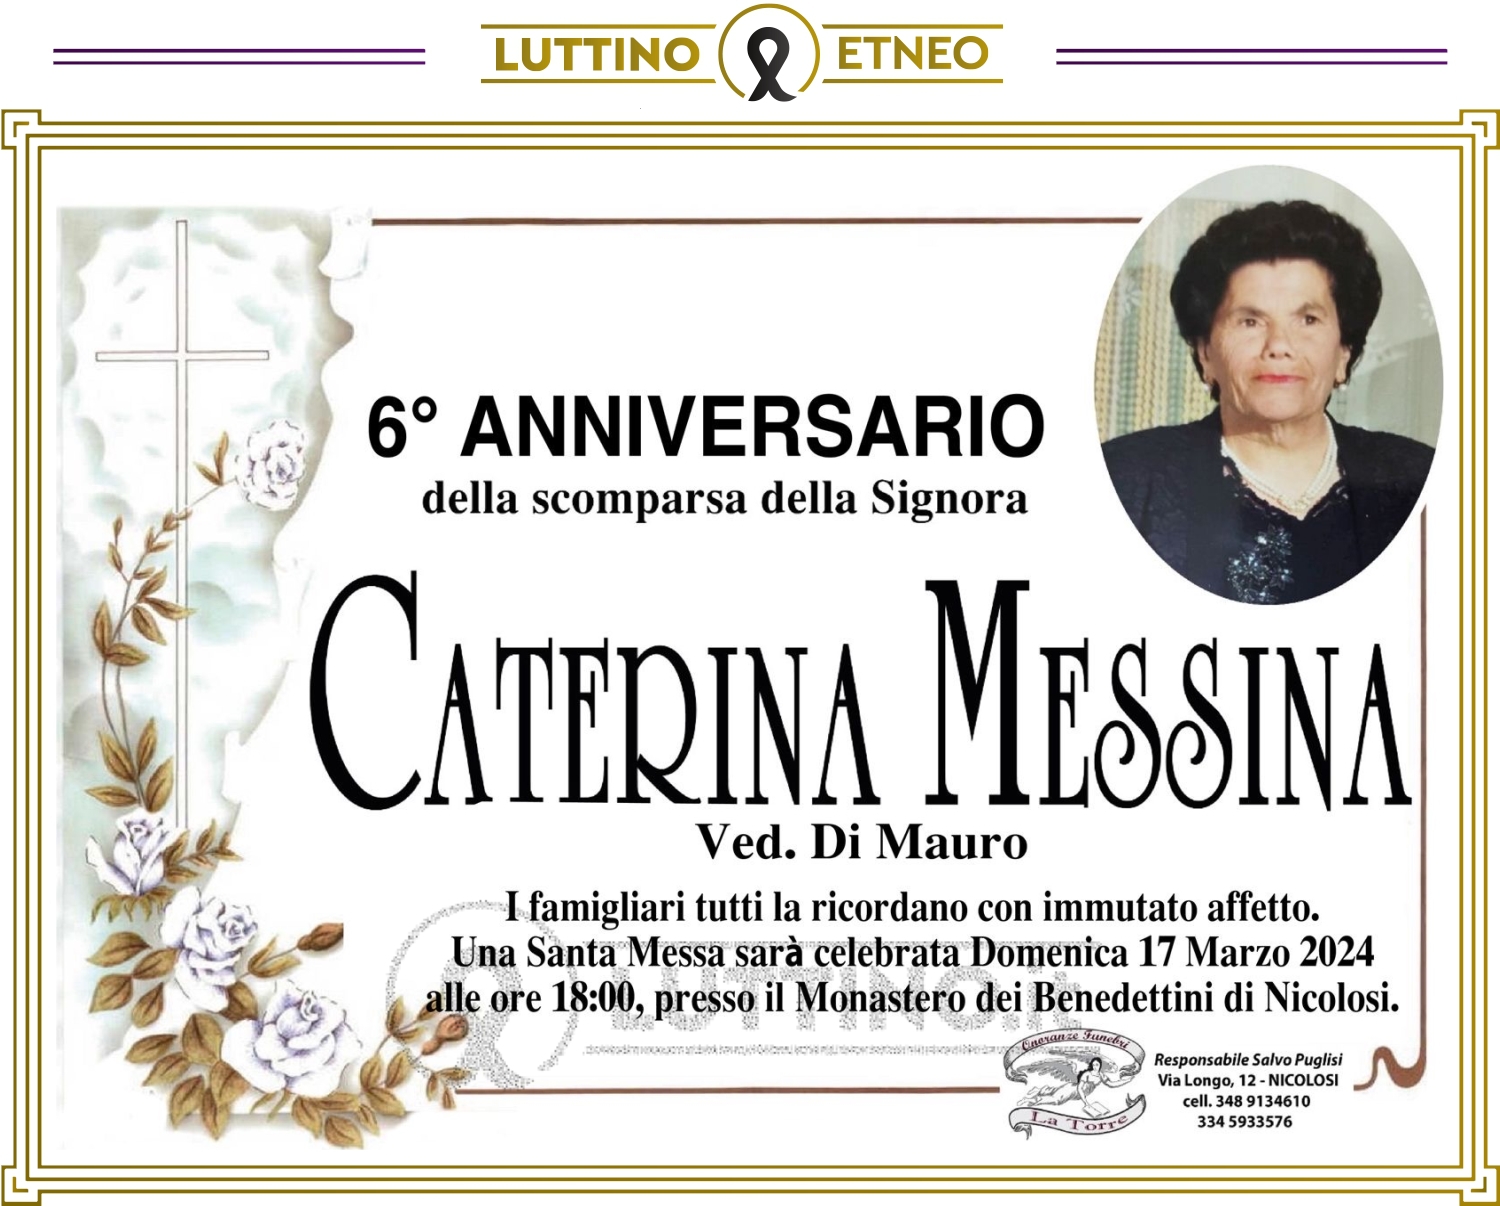 Caterina Messina